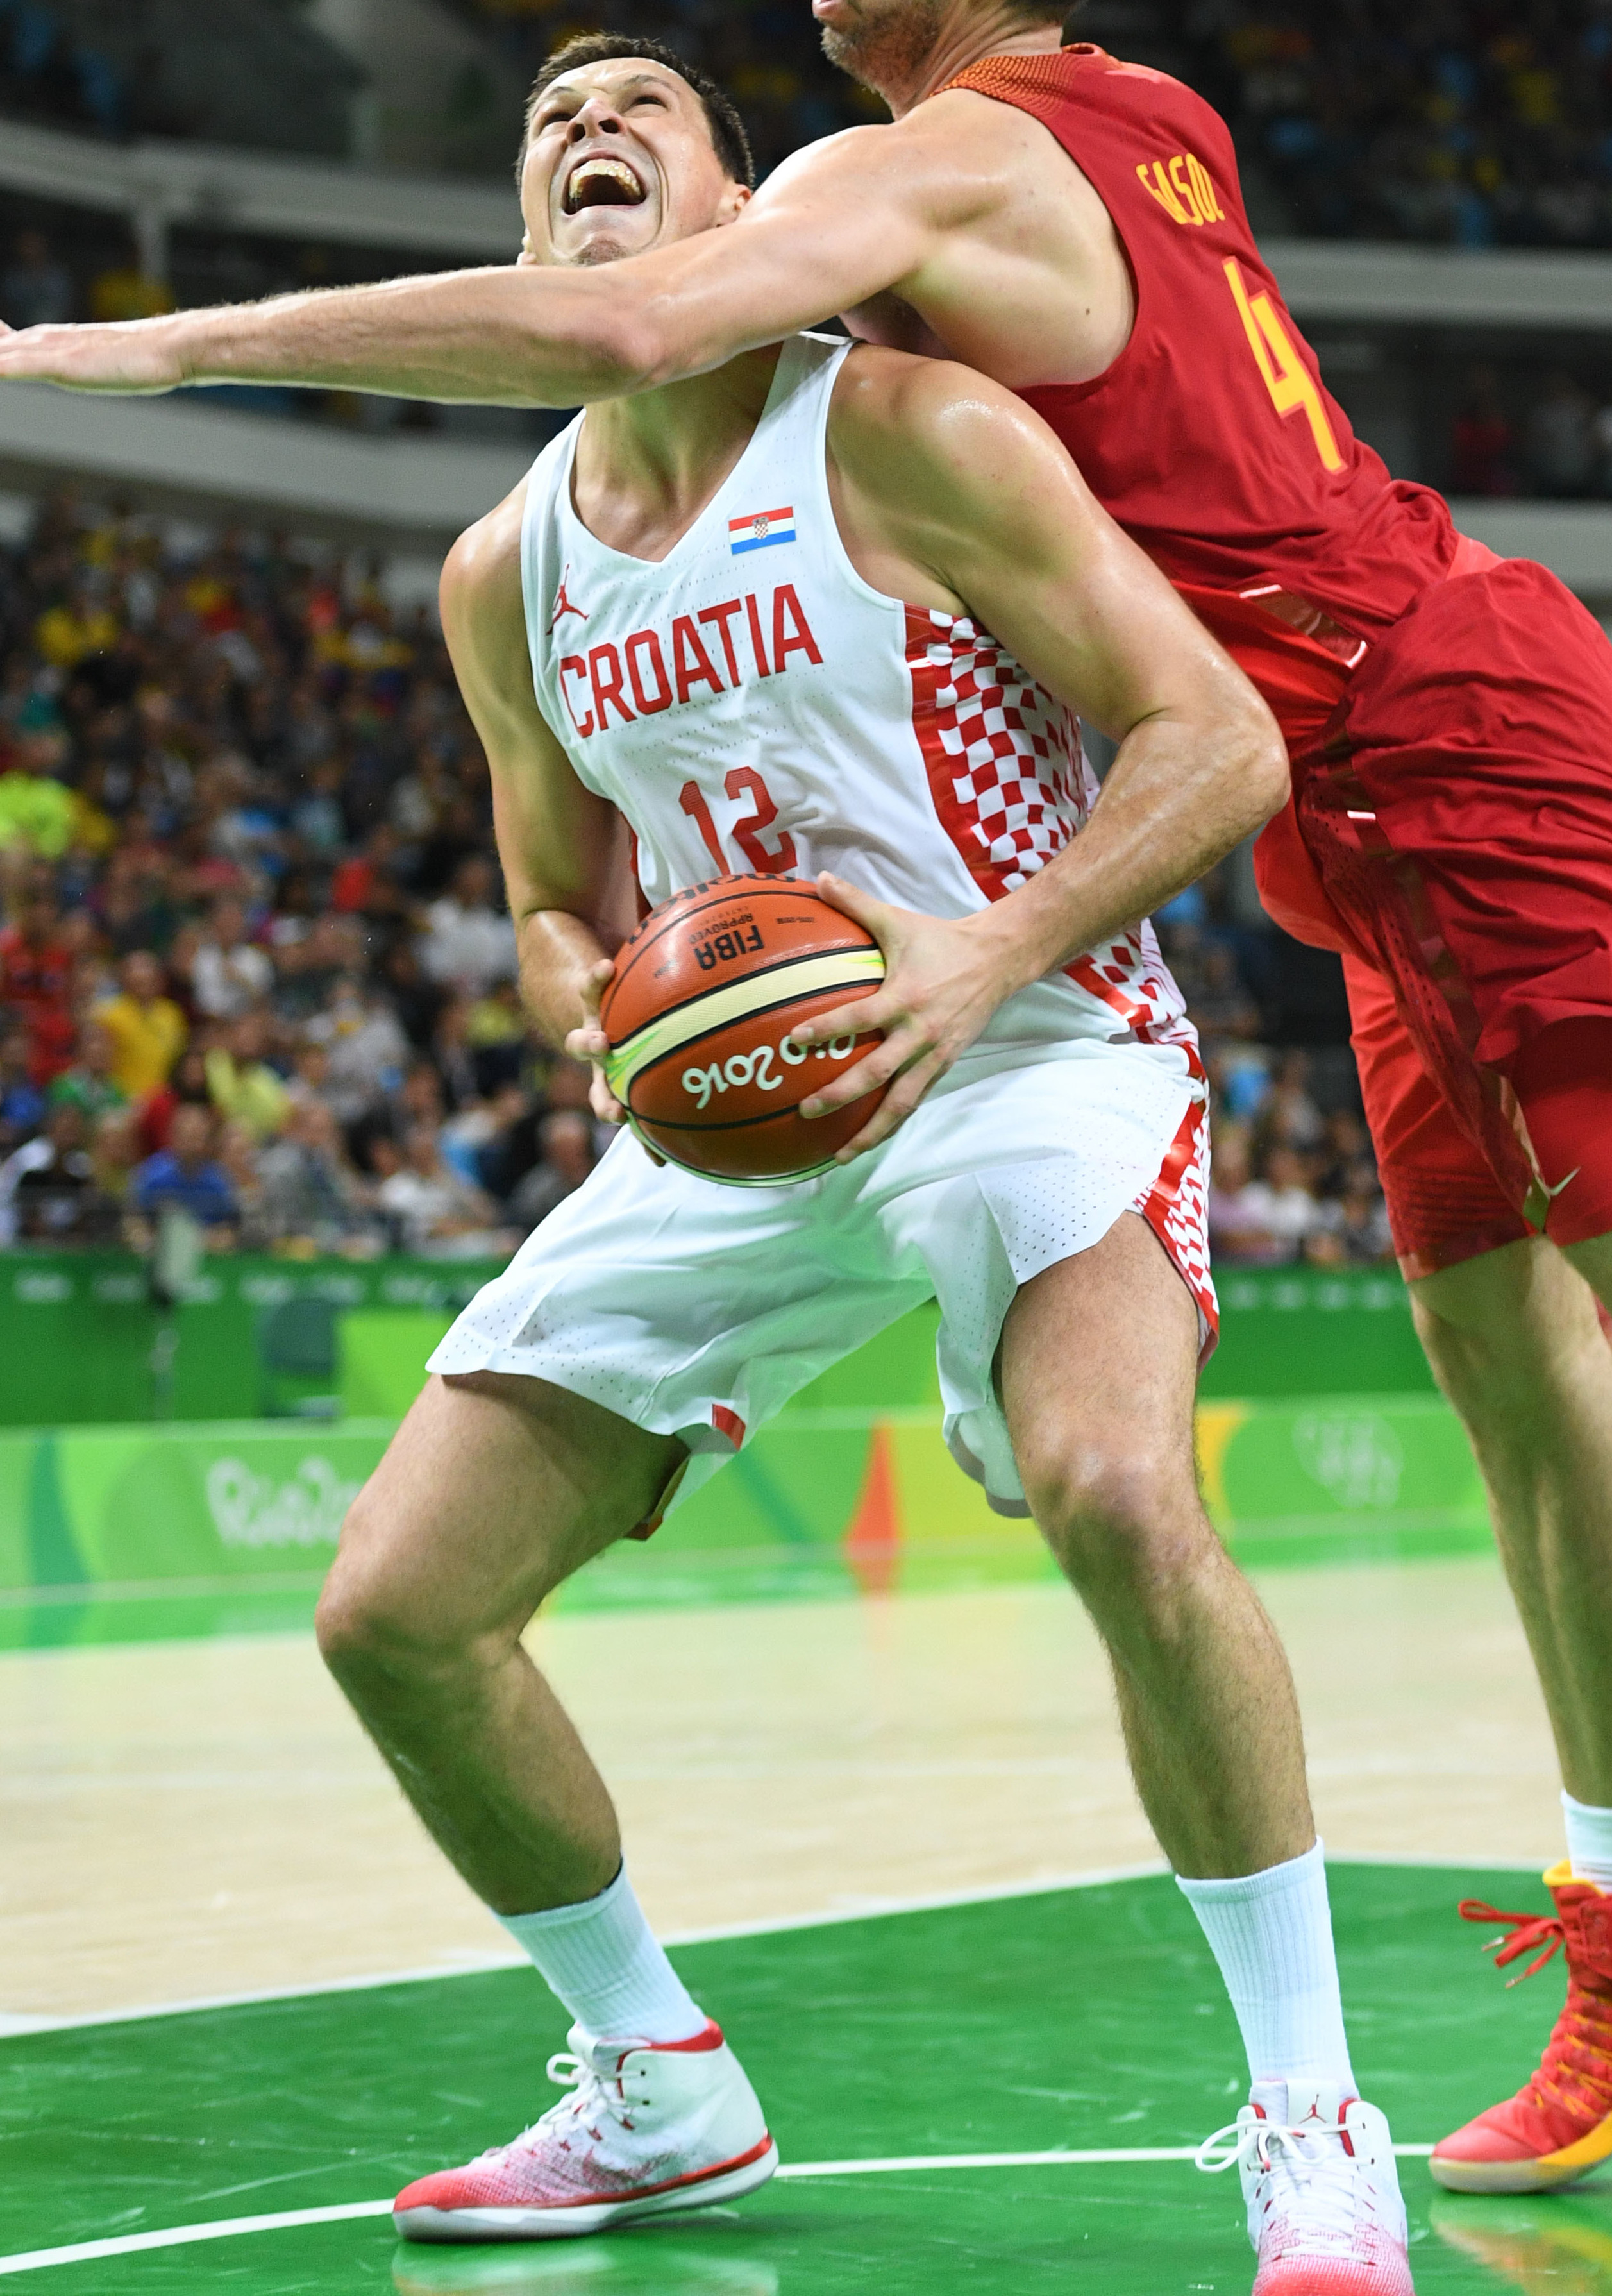 croatia basketball jersey jordan